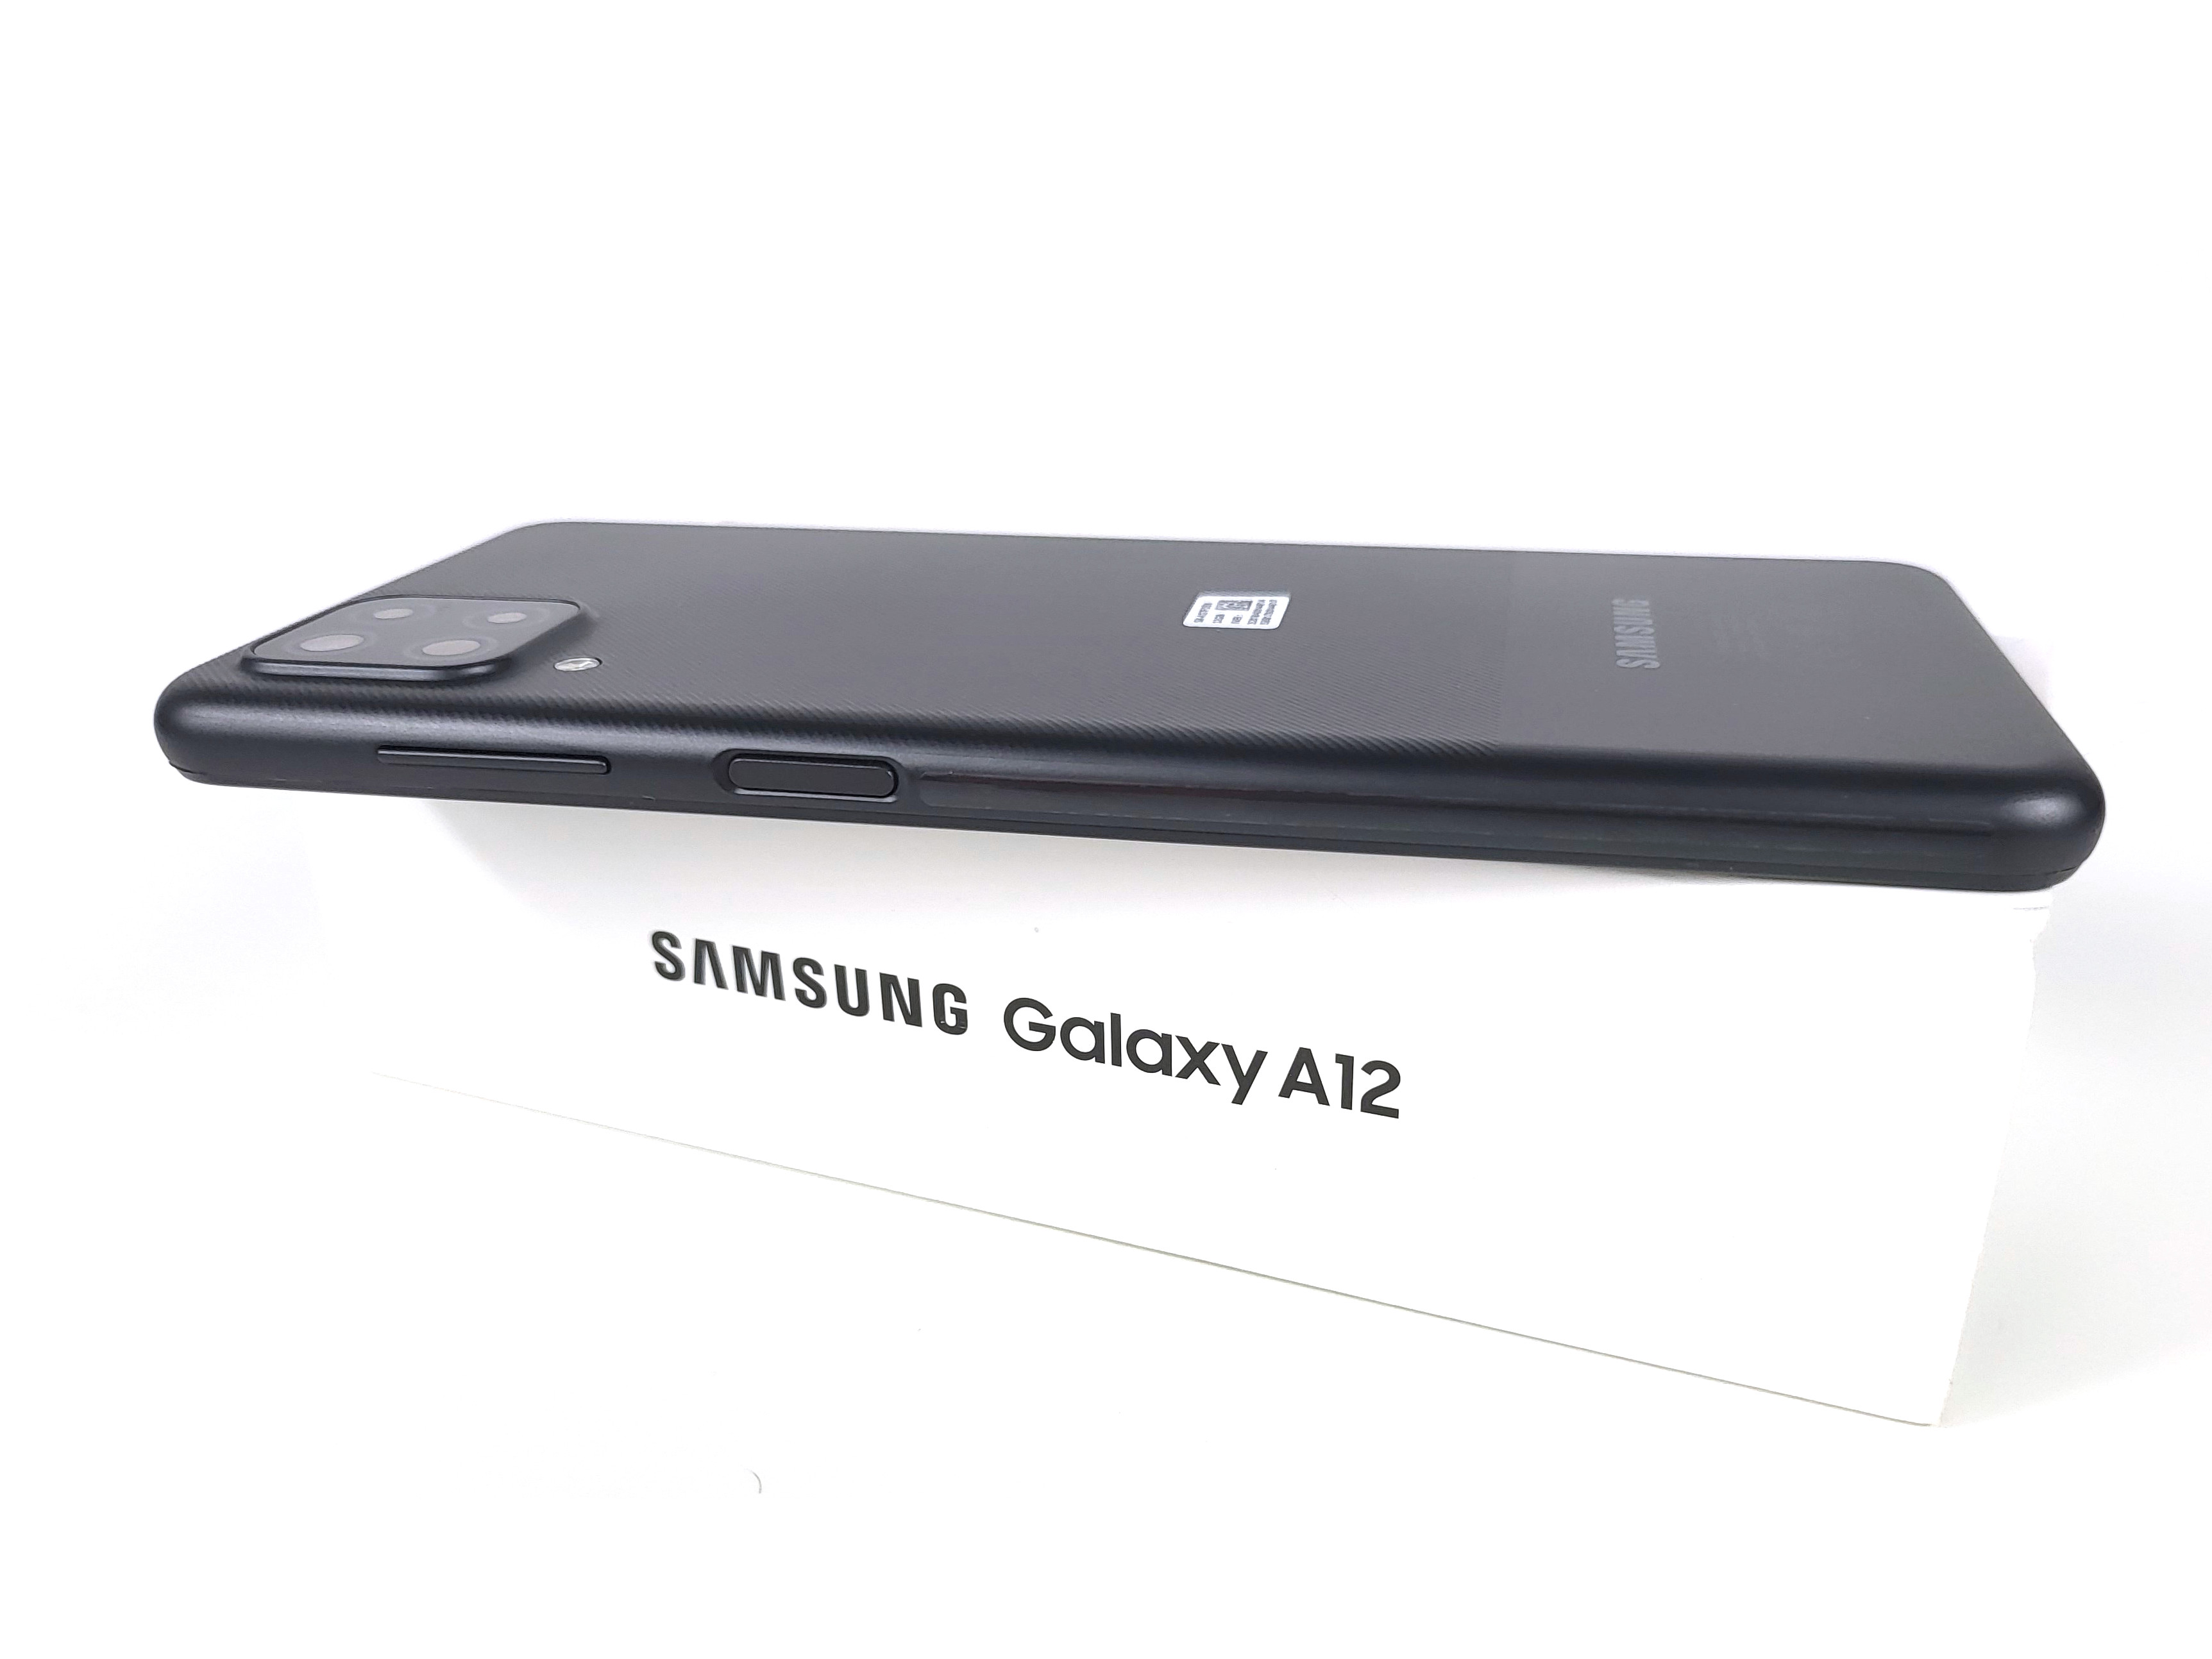 Đánh giá kết luận về Samsung Galaxy A12 Exynos: Samsung có tệ không?: Bạn đang muốn tìm hiểu về chất lượng của Samsung Galaxy A12 Exynos trước khi quyết định mua? Hãy để xem đánh giá chất lượng và kết luận về sản phẩm này. Quyết định của bạn sẽ được định hình nhiều hơn bằng những hình ảnh thực tế về sản phẩm. 